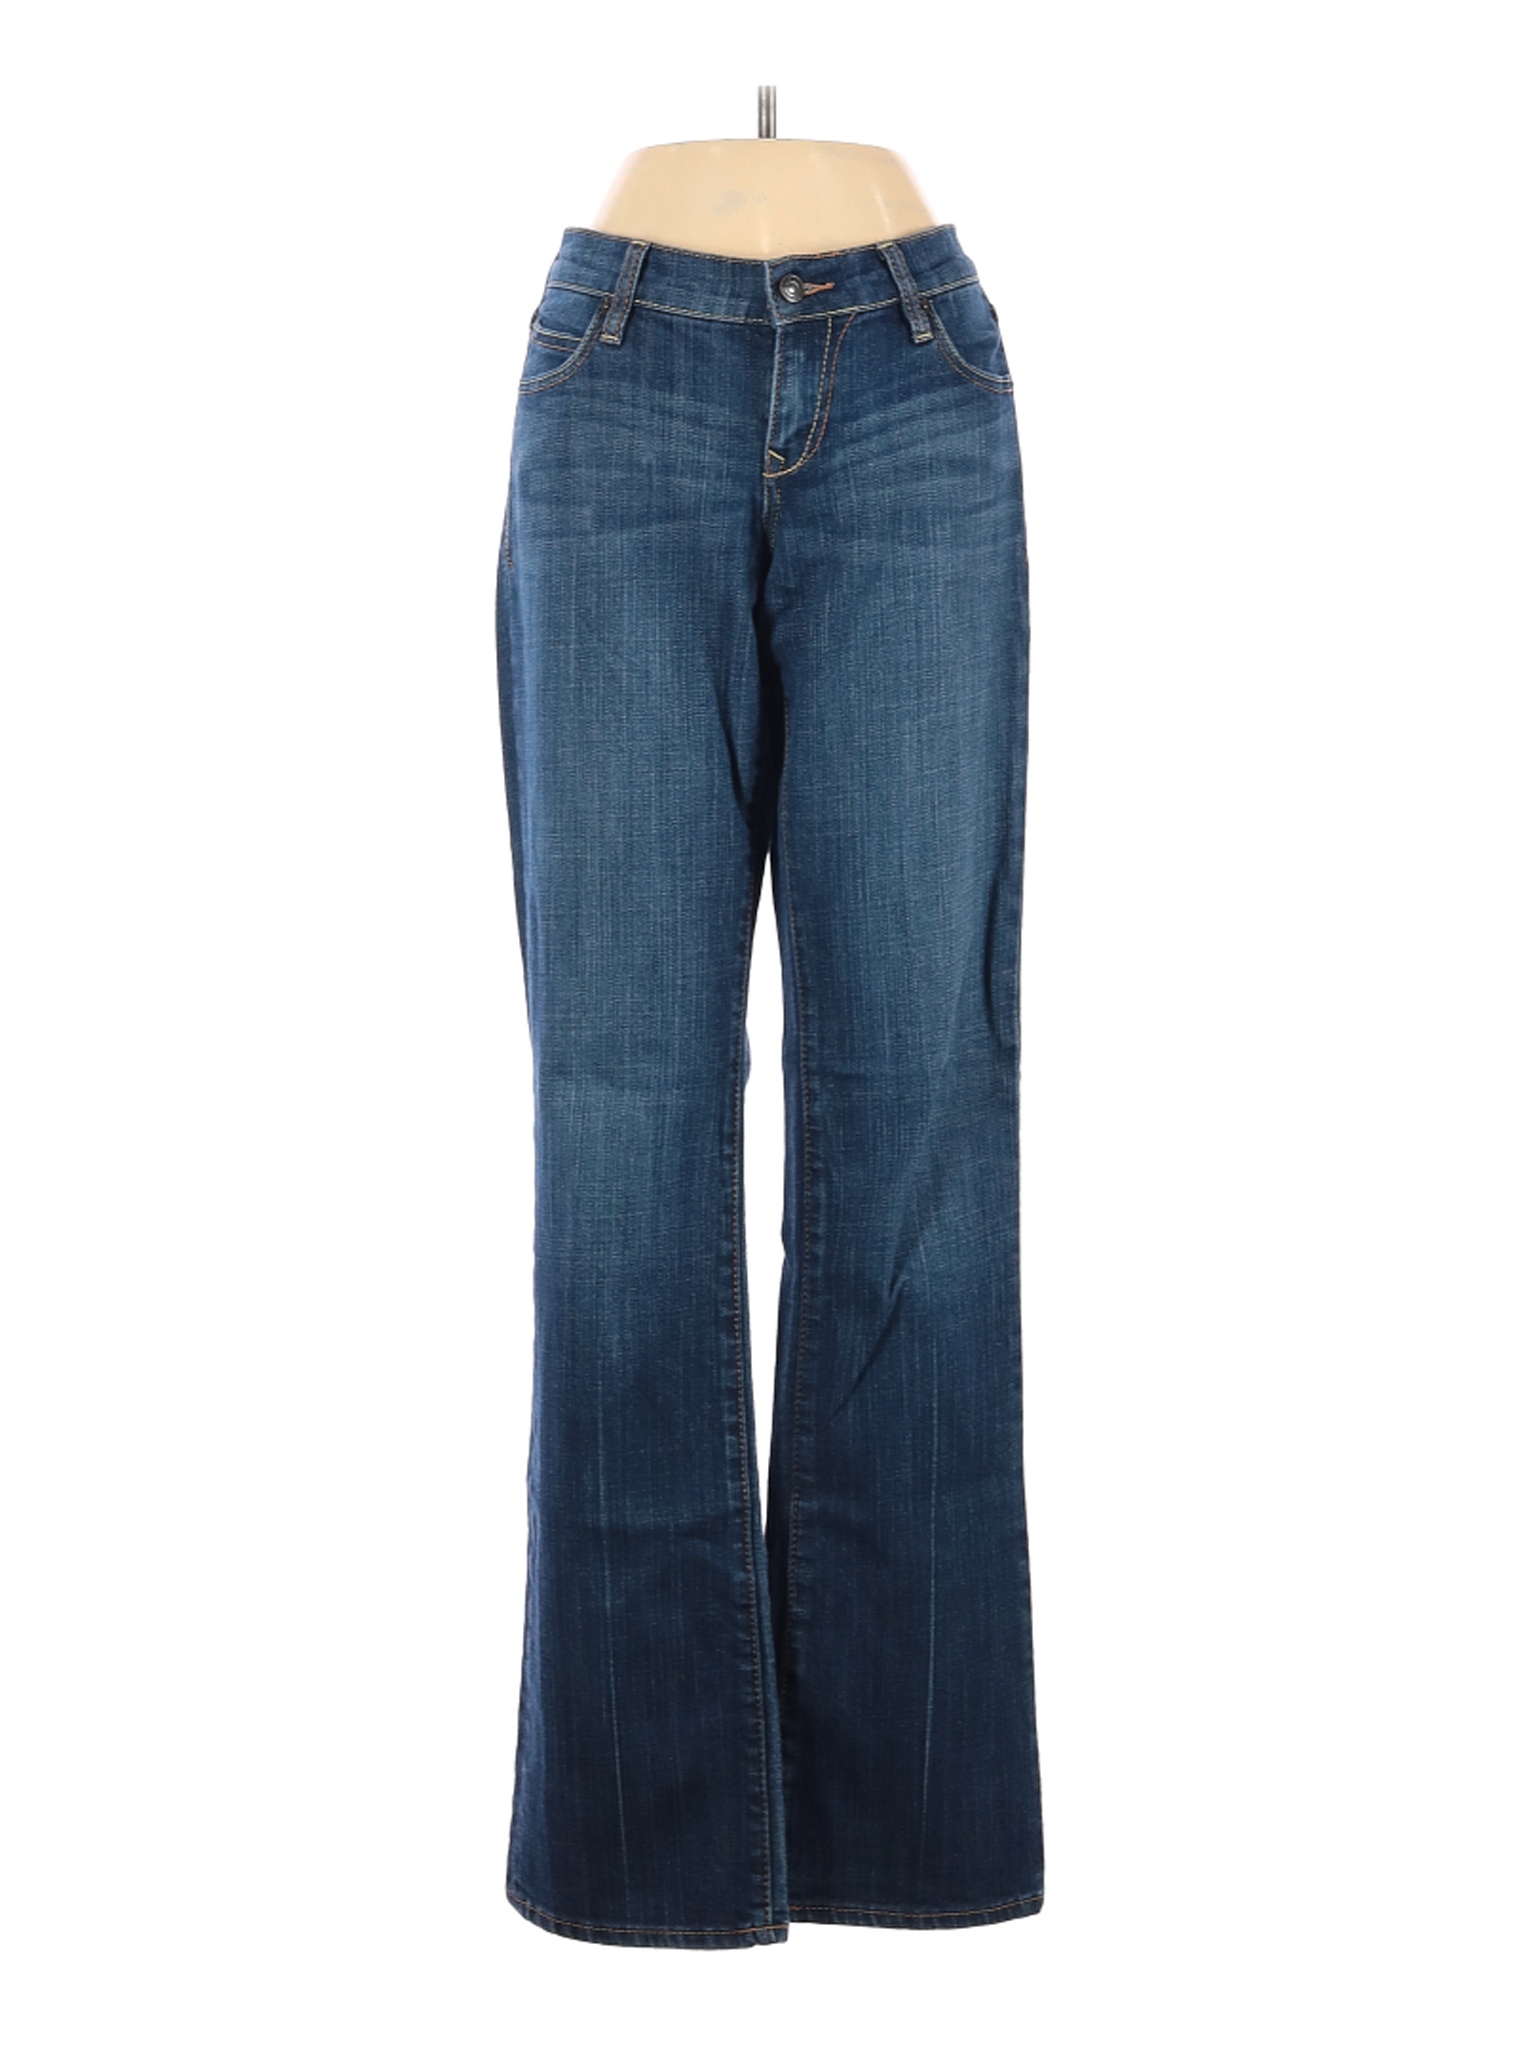 Old Navy Women Blue Jeans 2 | eBay